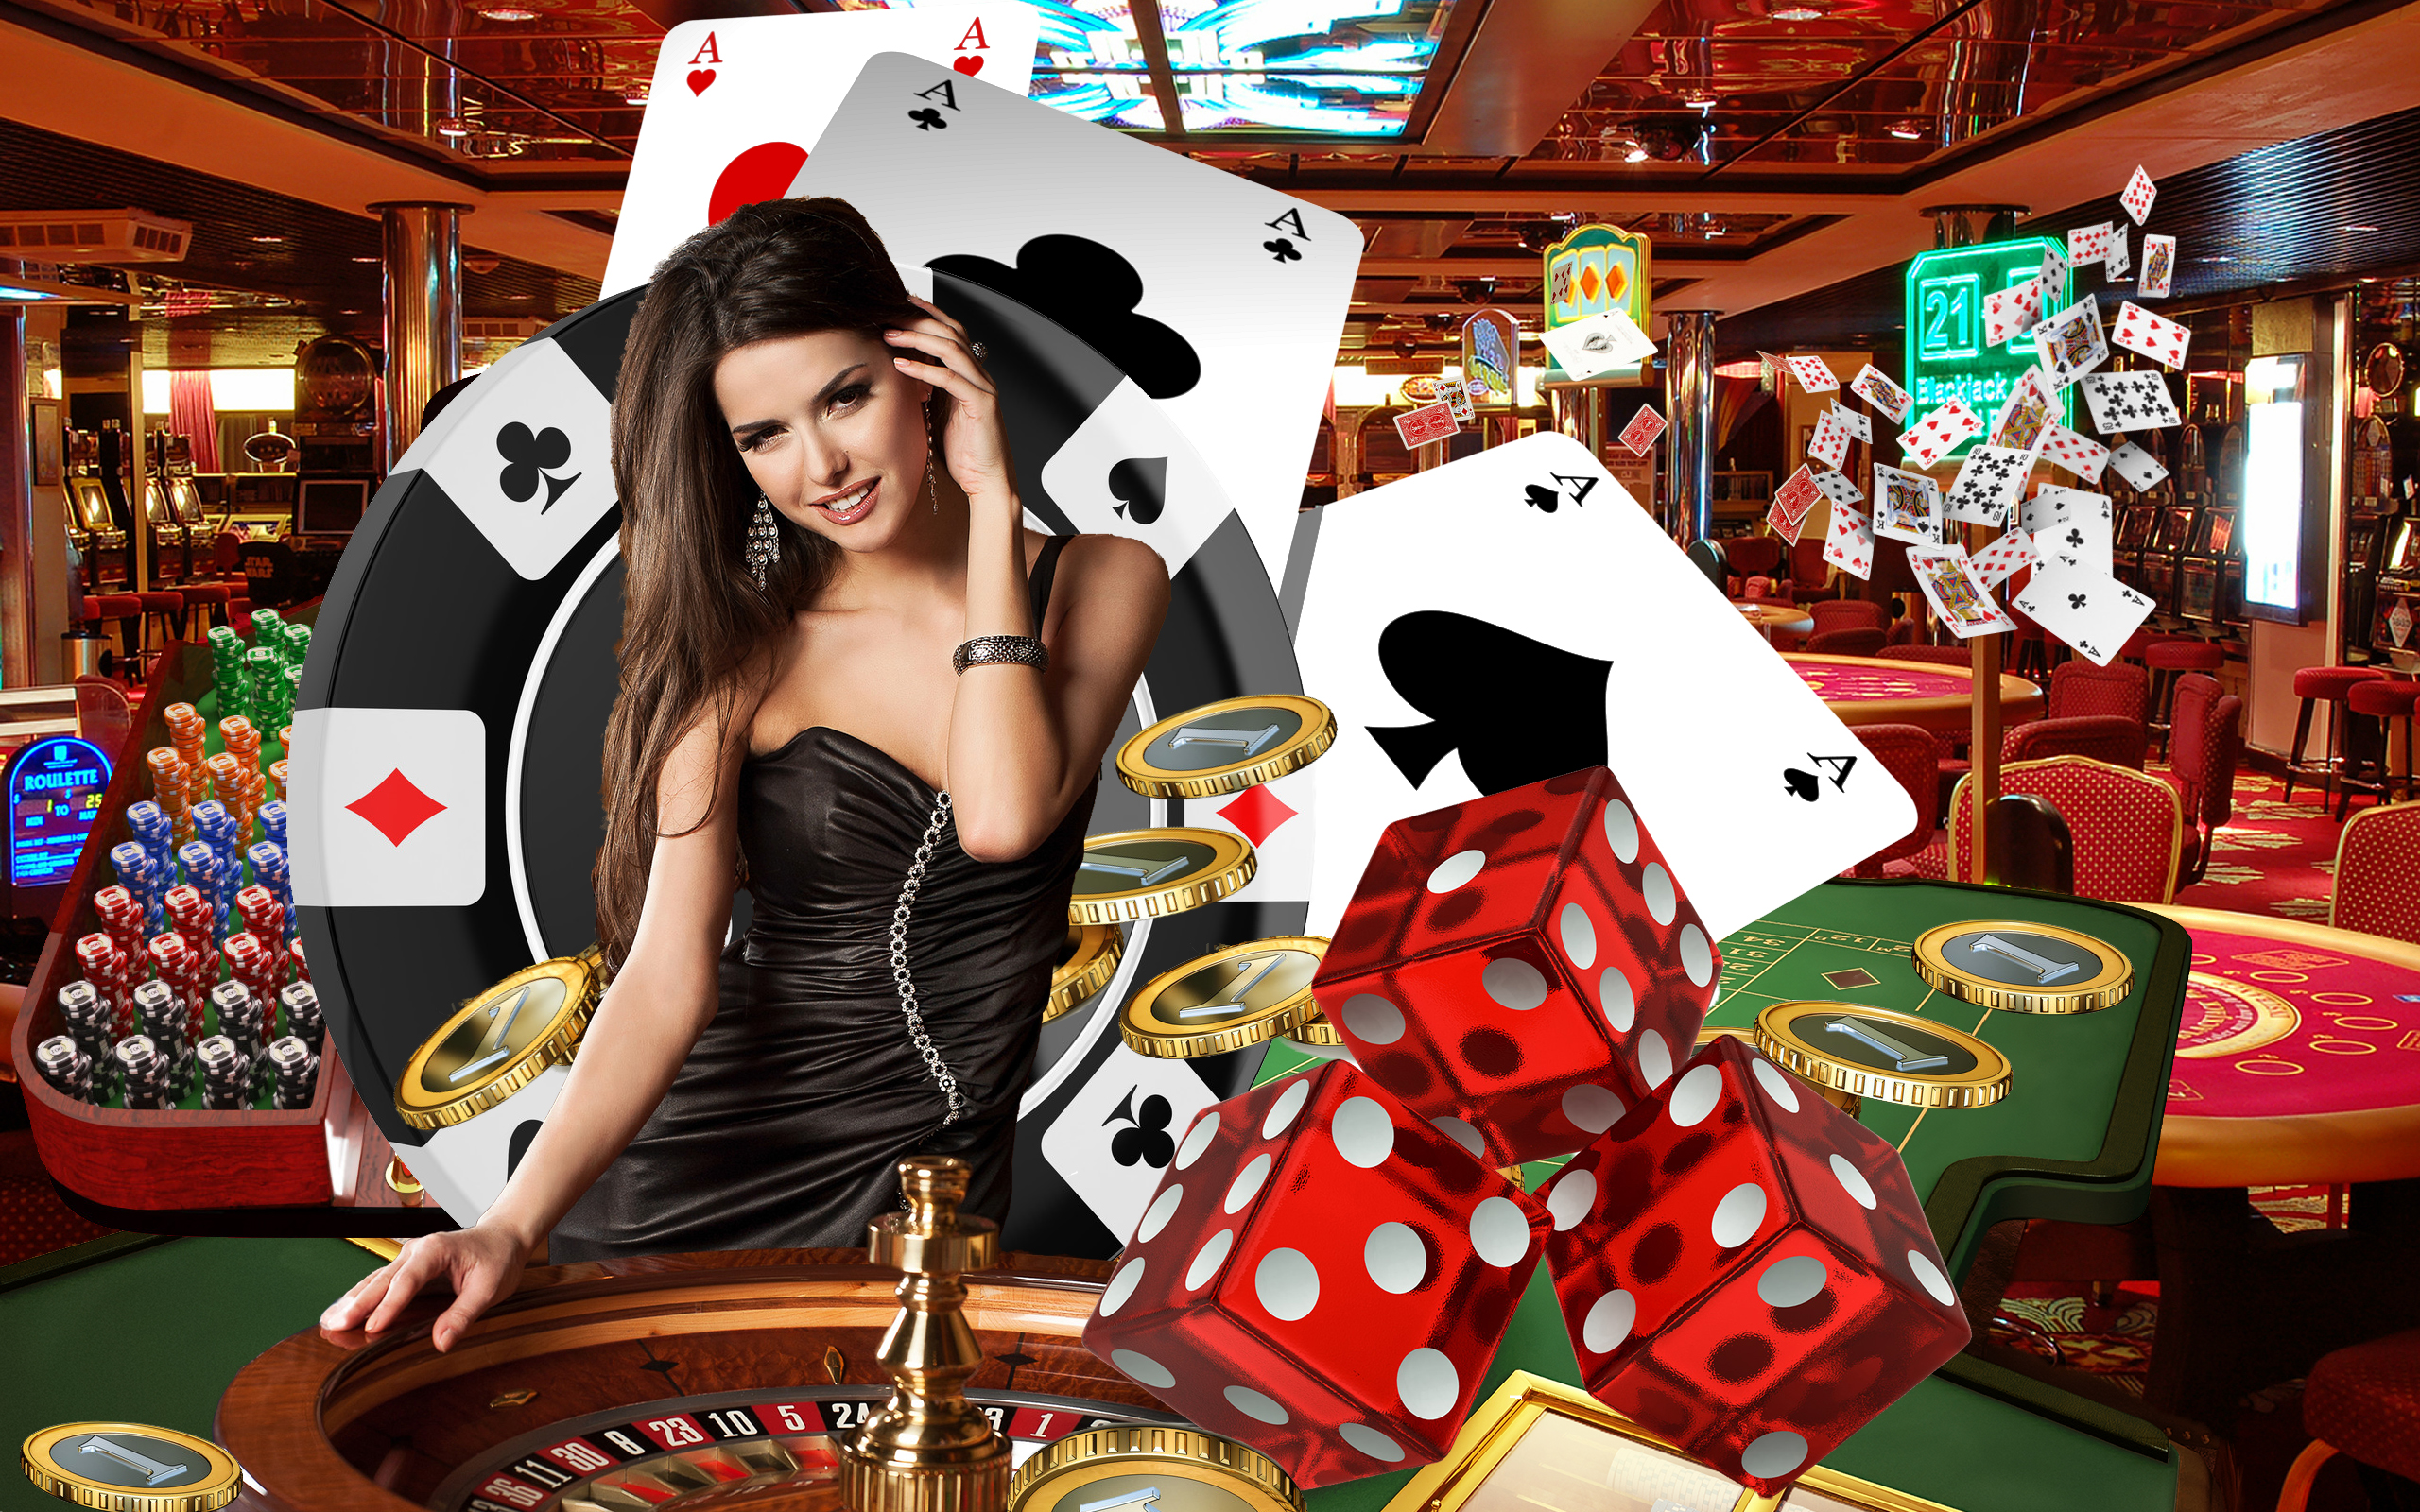 Online games and casino казино игровые автоматы играть бесплатно без регистрации и смс онлайн